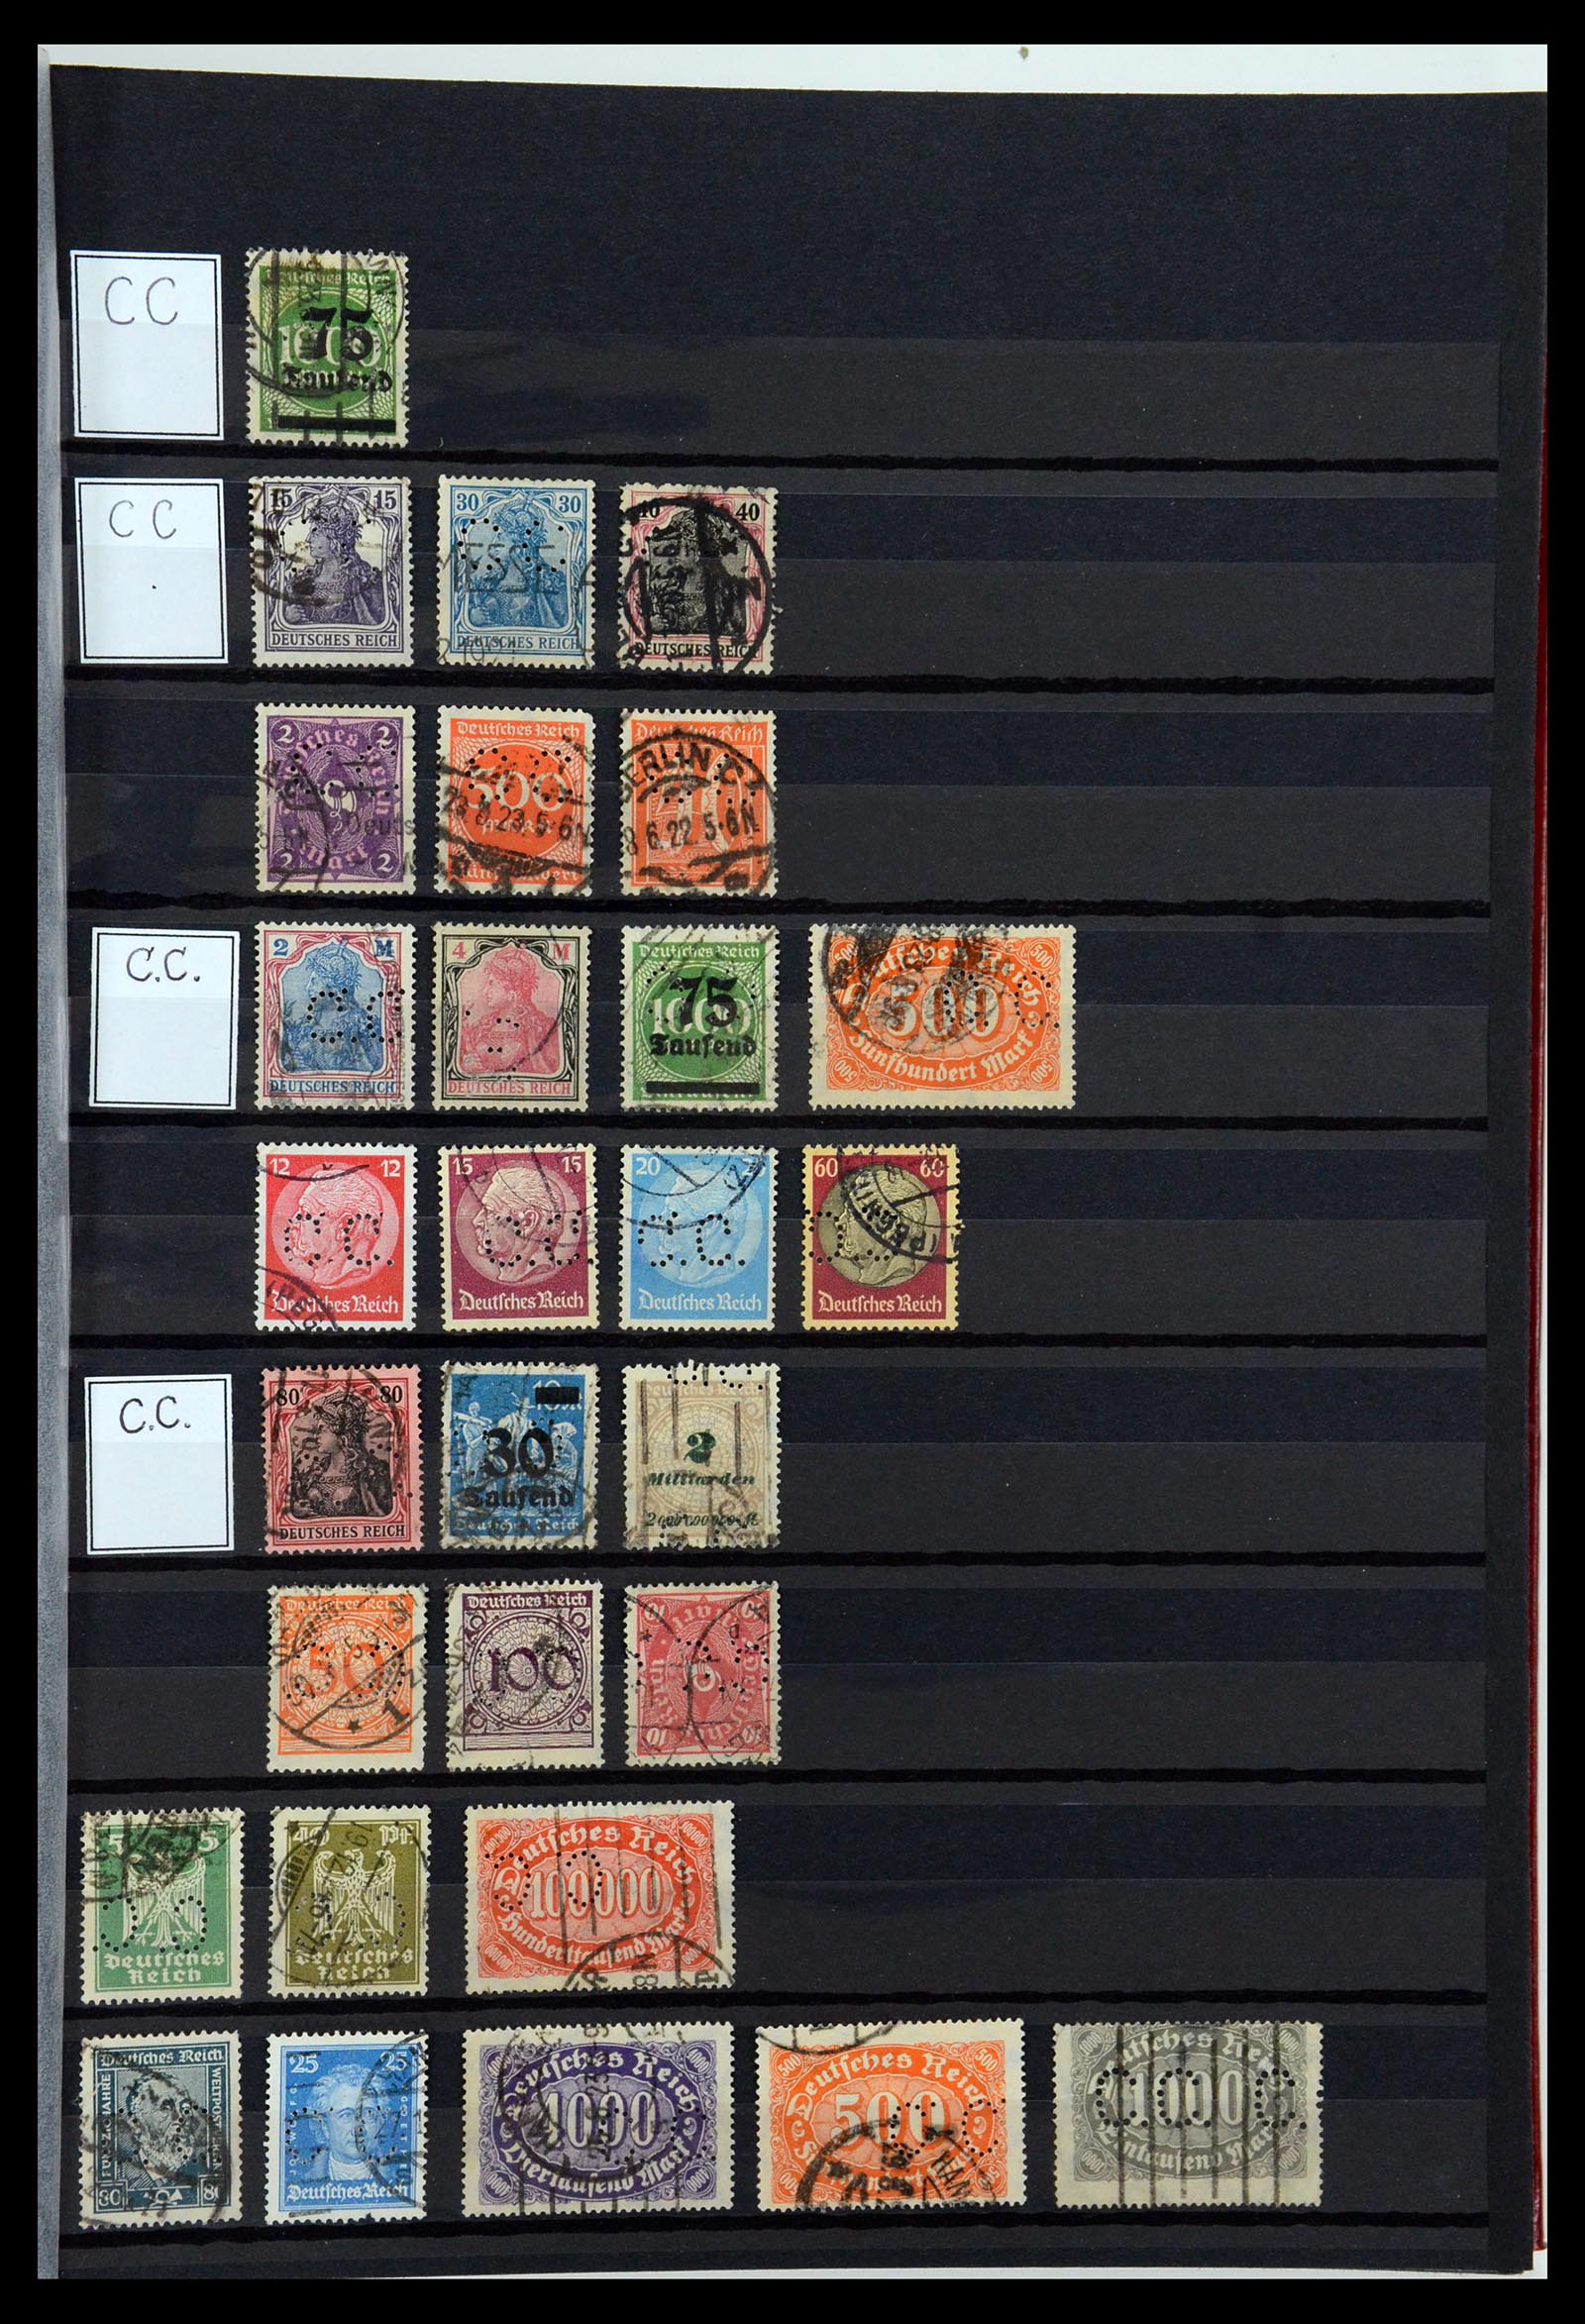 36405 061 - Stamp collection 36405 German Reich perfins 1880-1945.